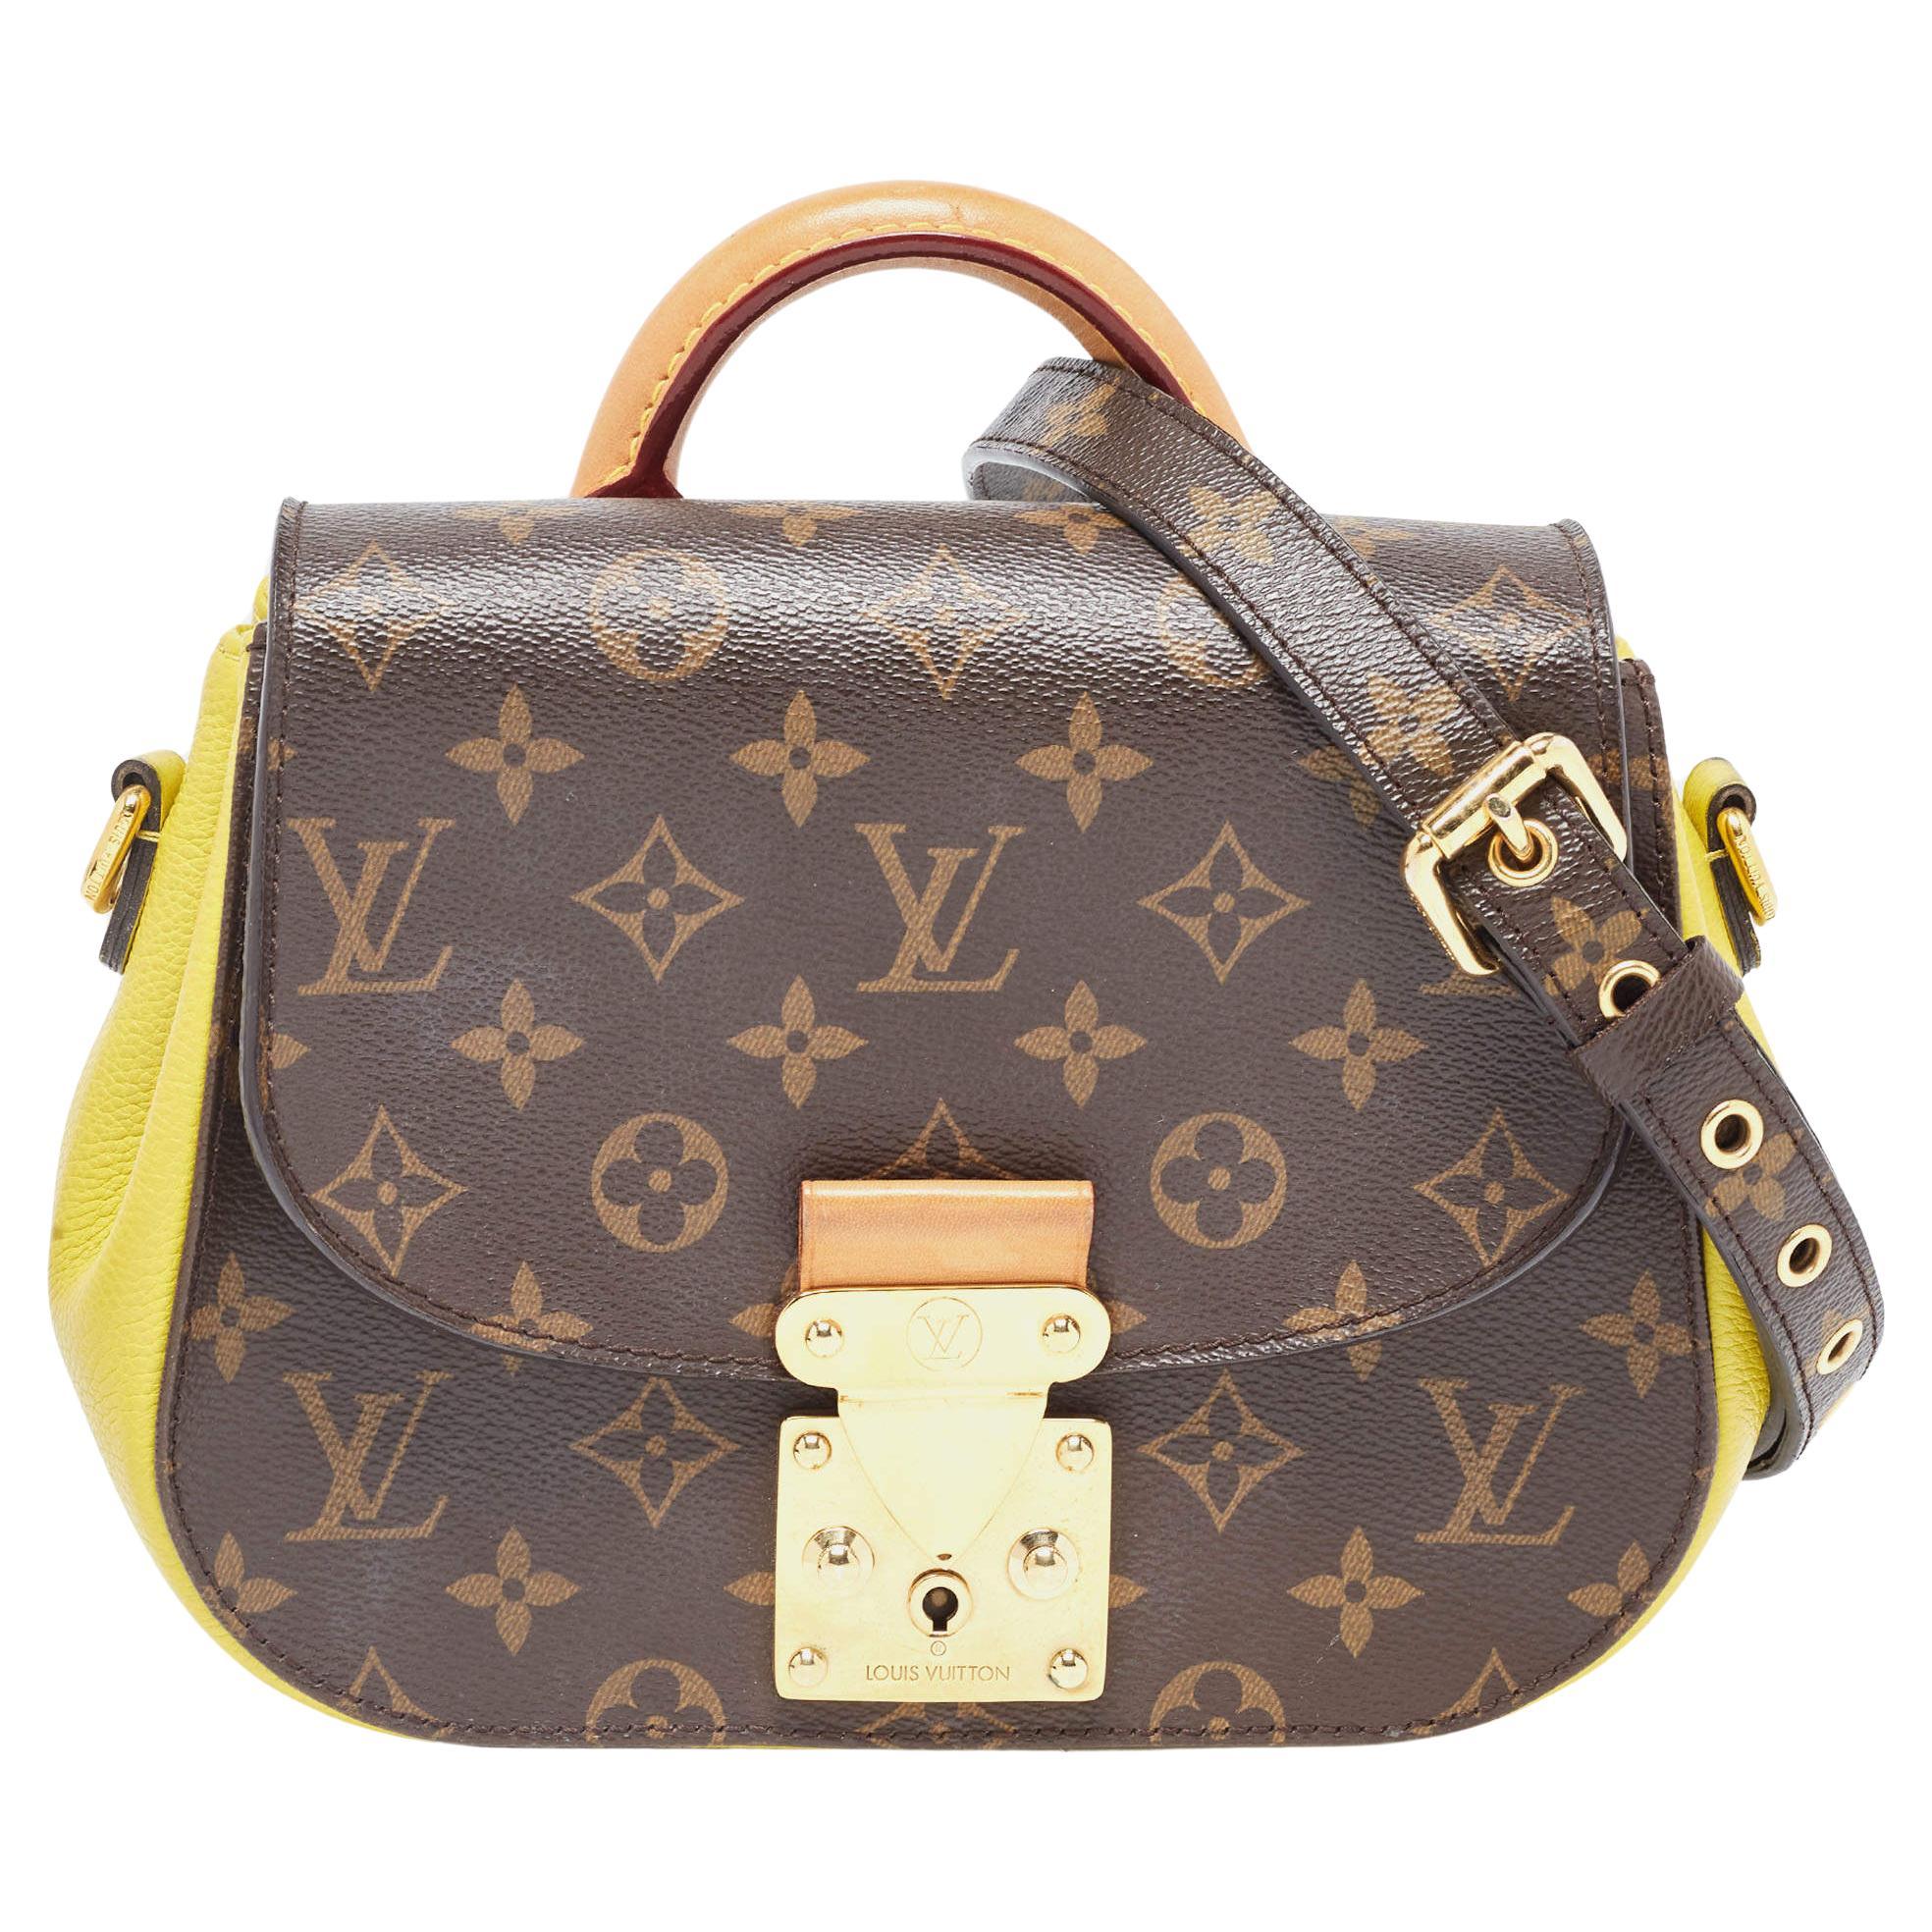 Louis Vuitton Eden Handbag 327898, Cut Out Small Leather Shoulder Bag